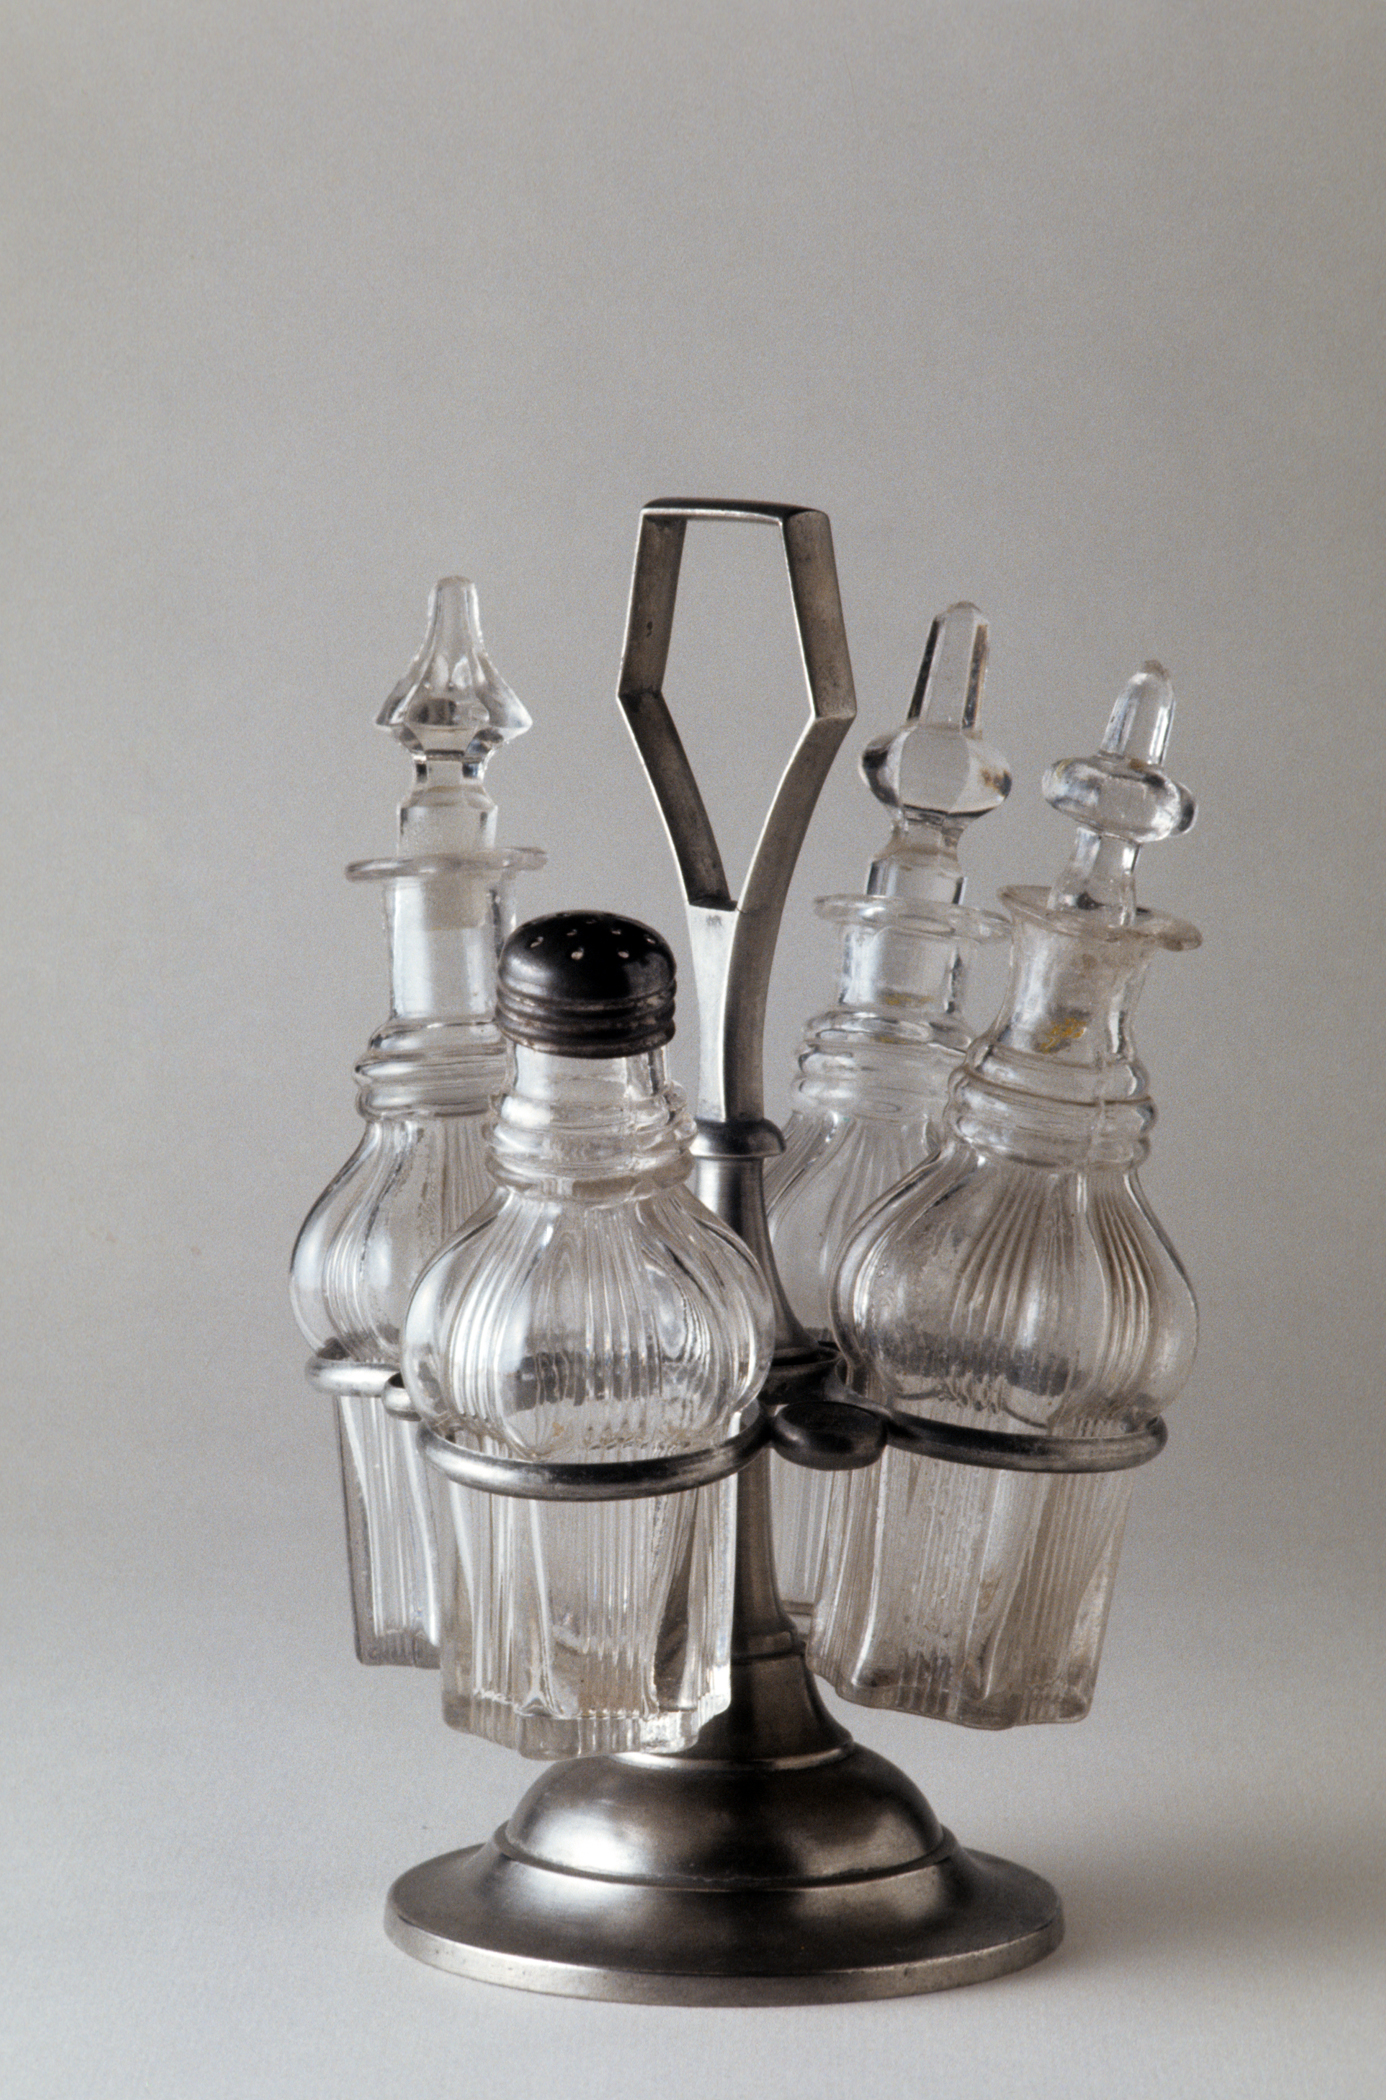 1971.0035 Britannia cruet stand (with bottles)